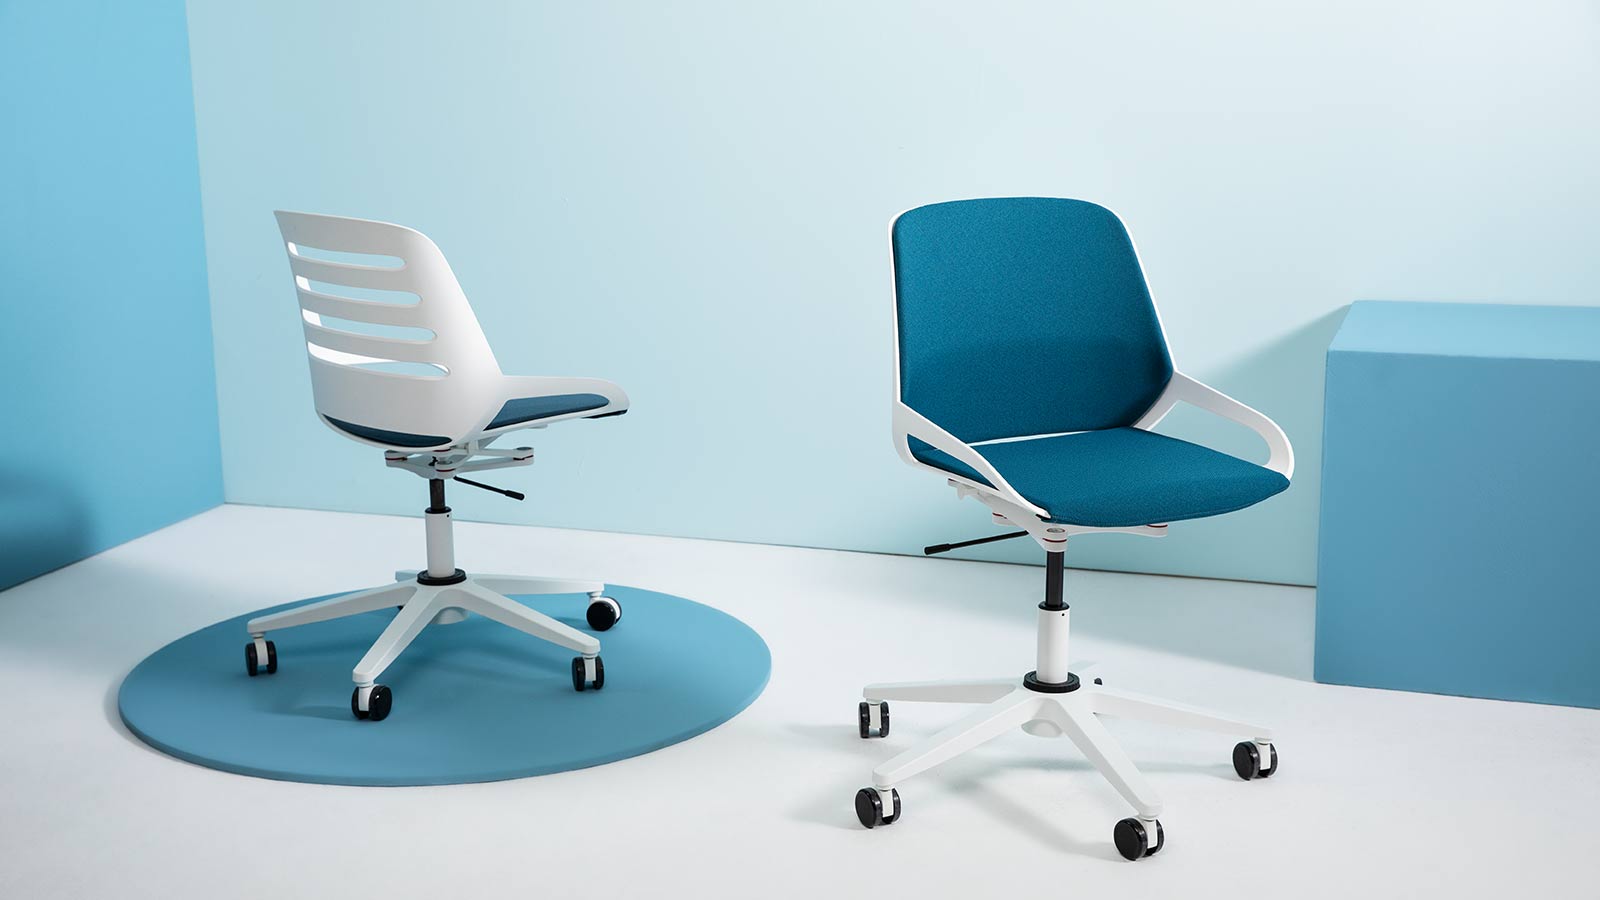 Bürostuhl "Numo Task" von Aeris Gestell Std weiß, Sitz-/Rückenpolster blau 2 Stühle